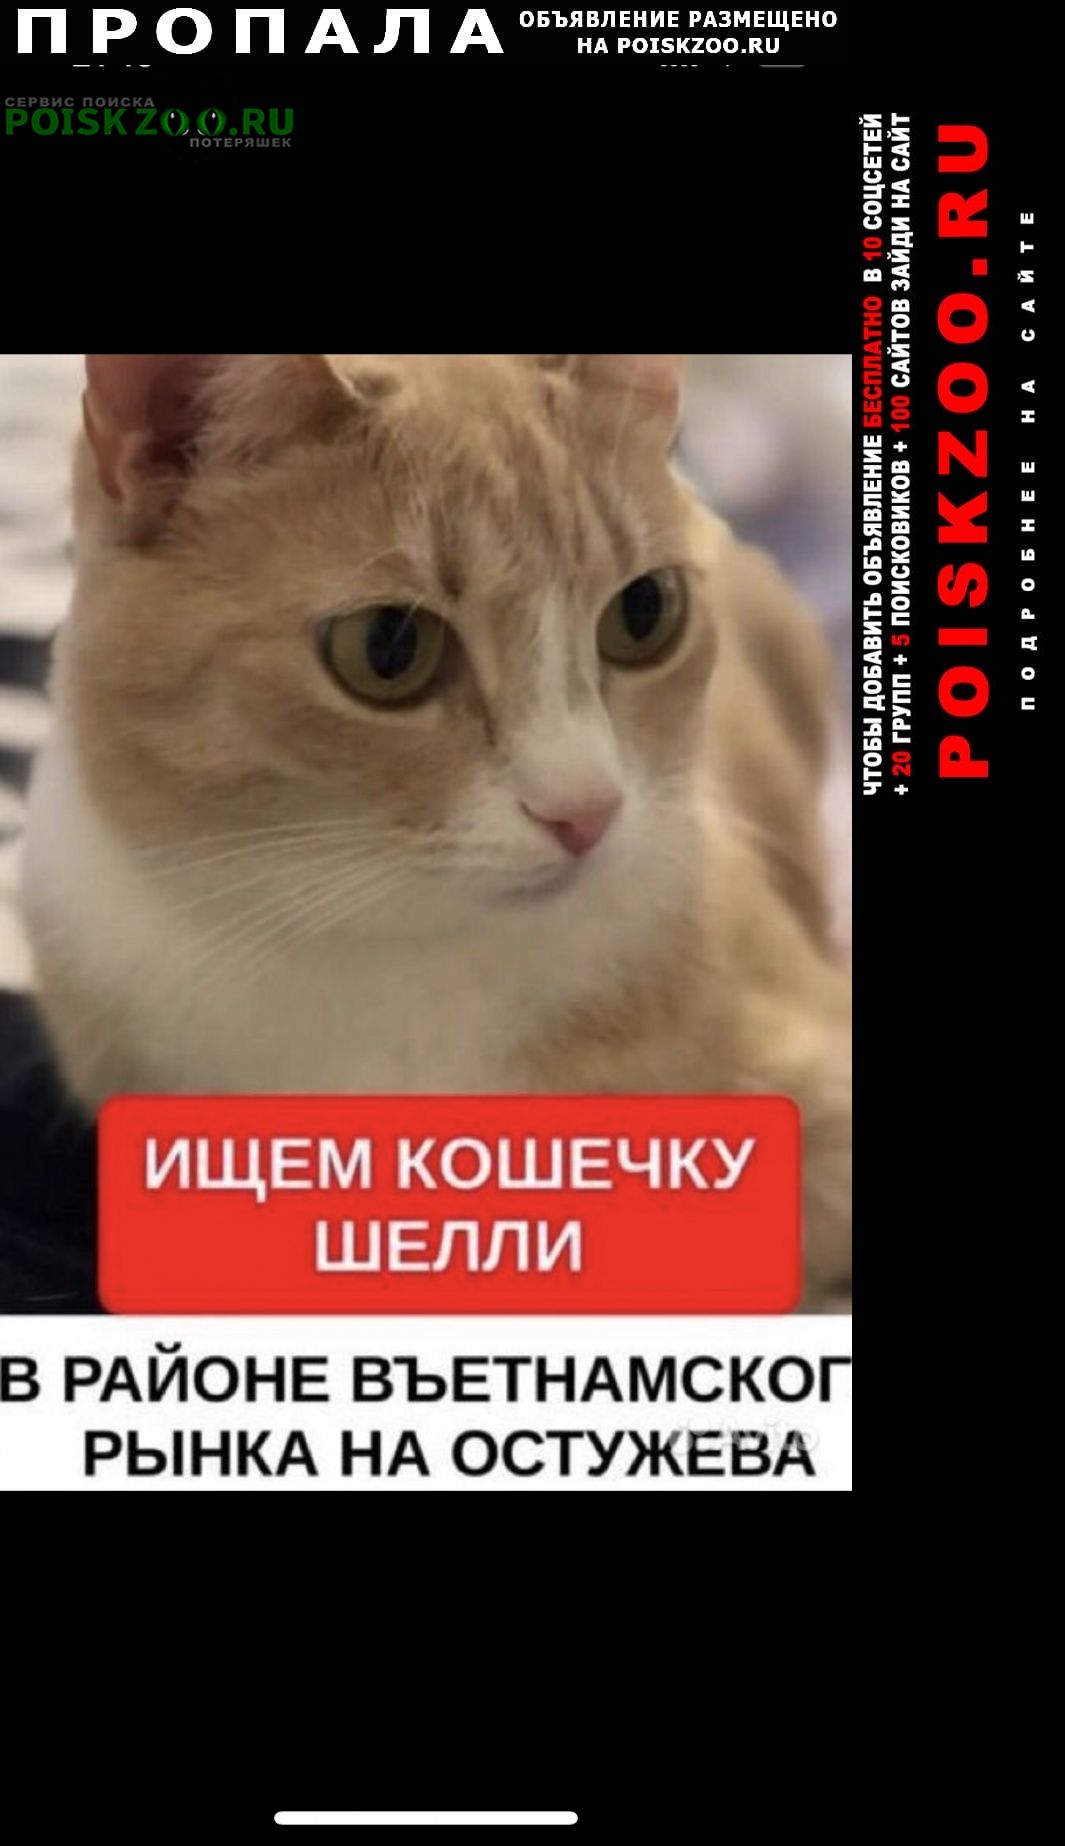 Пропала кошка прошу сообщить информацию Воронеж